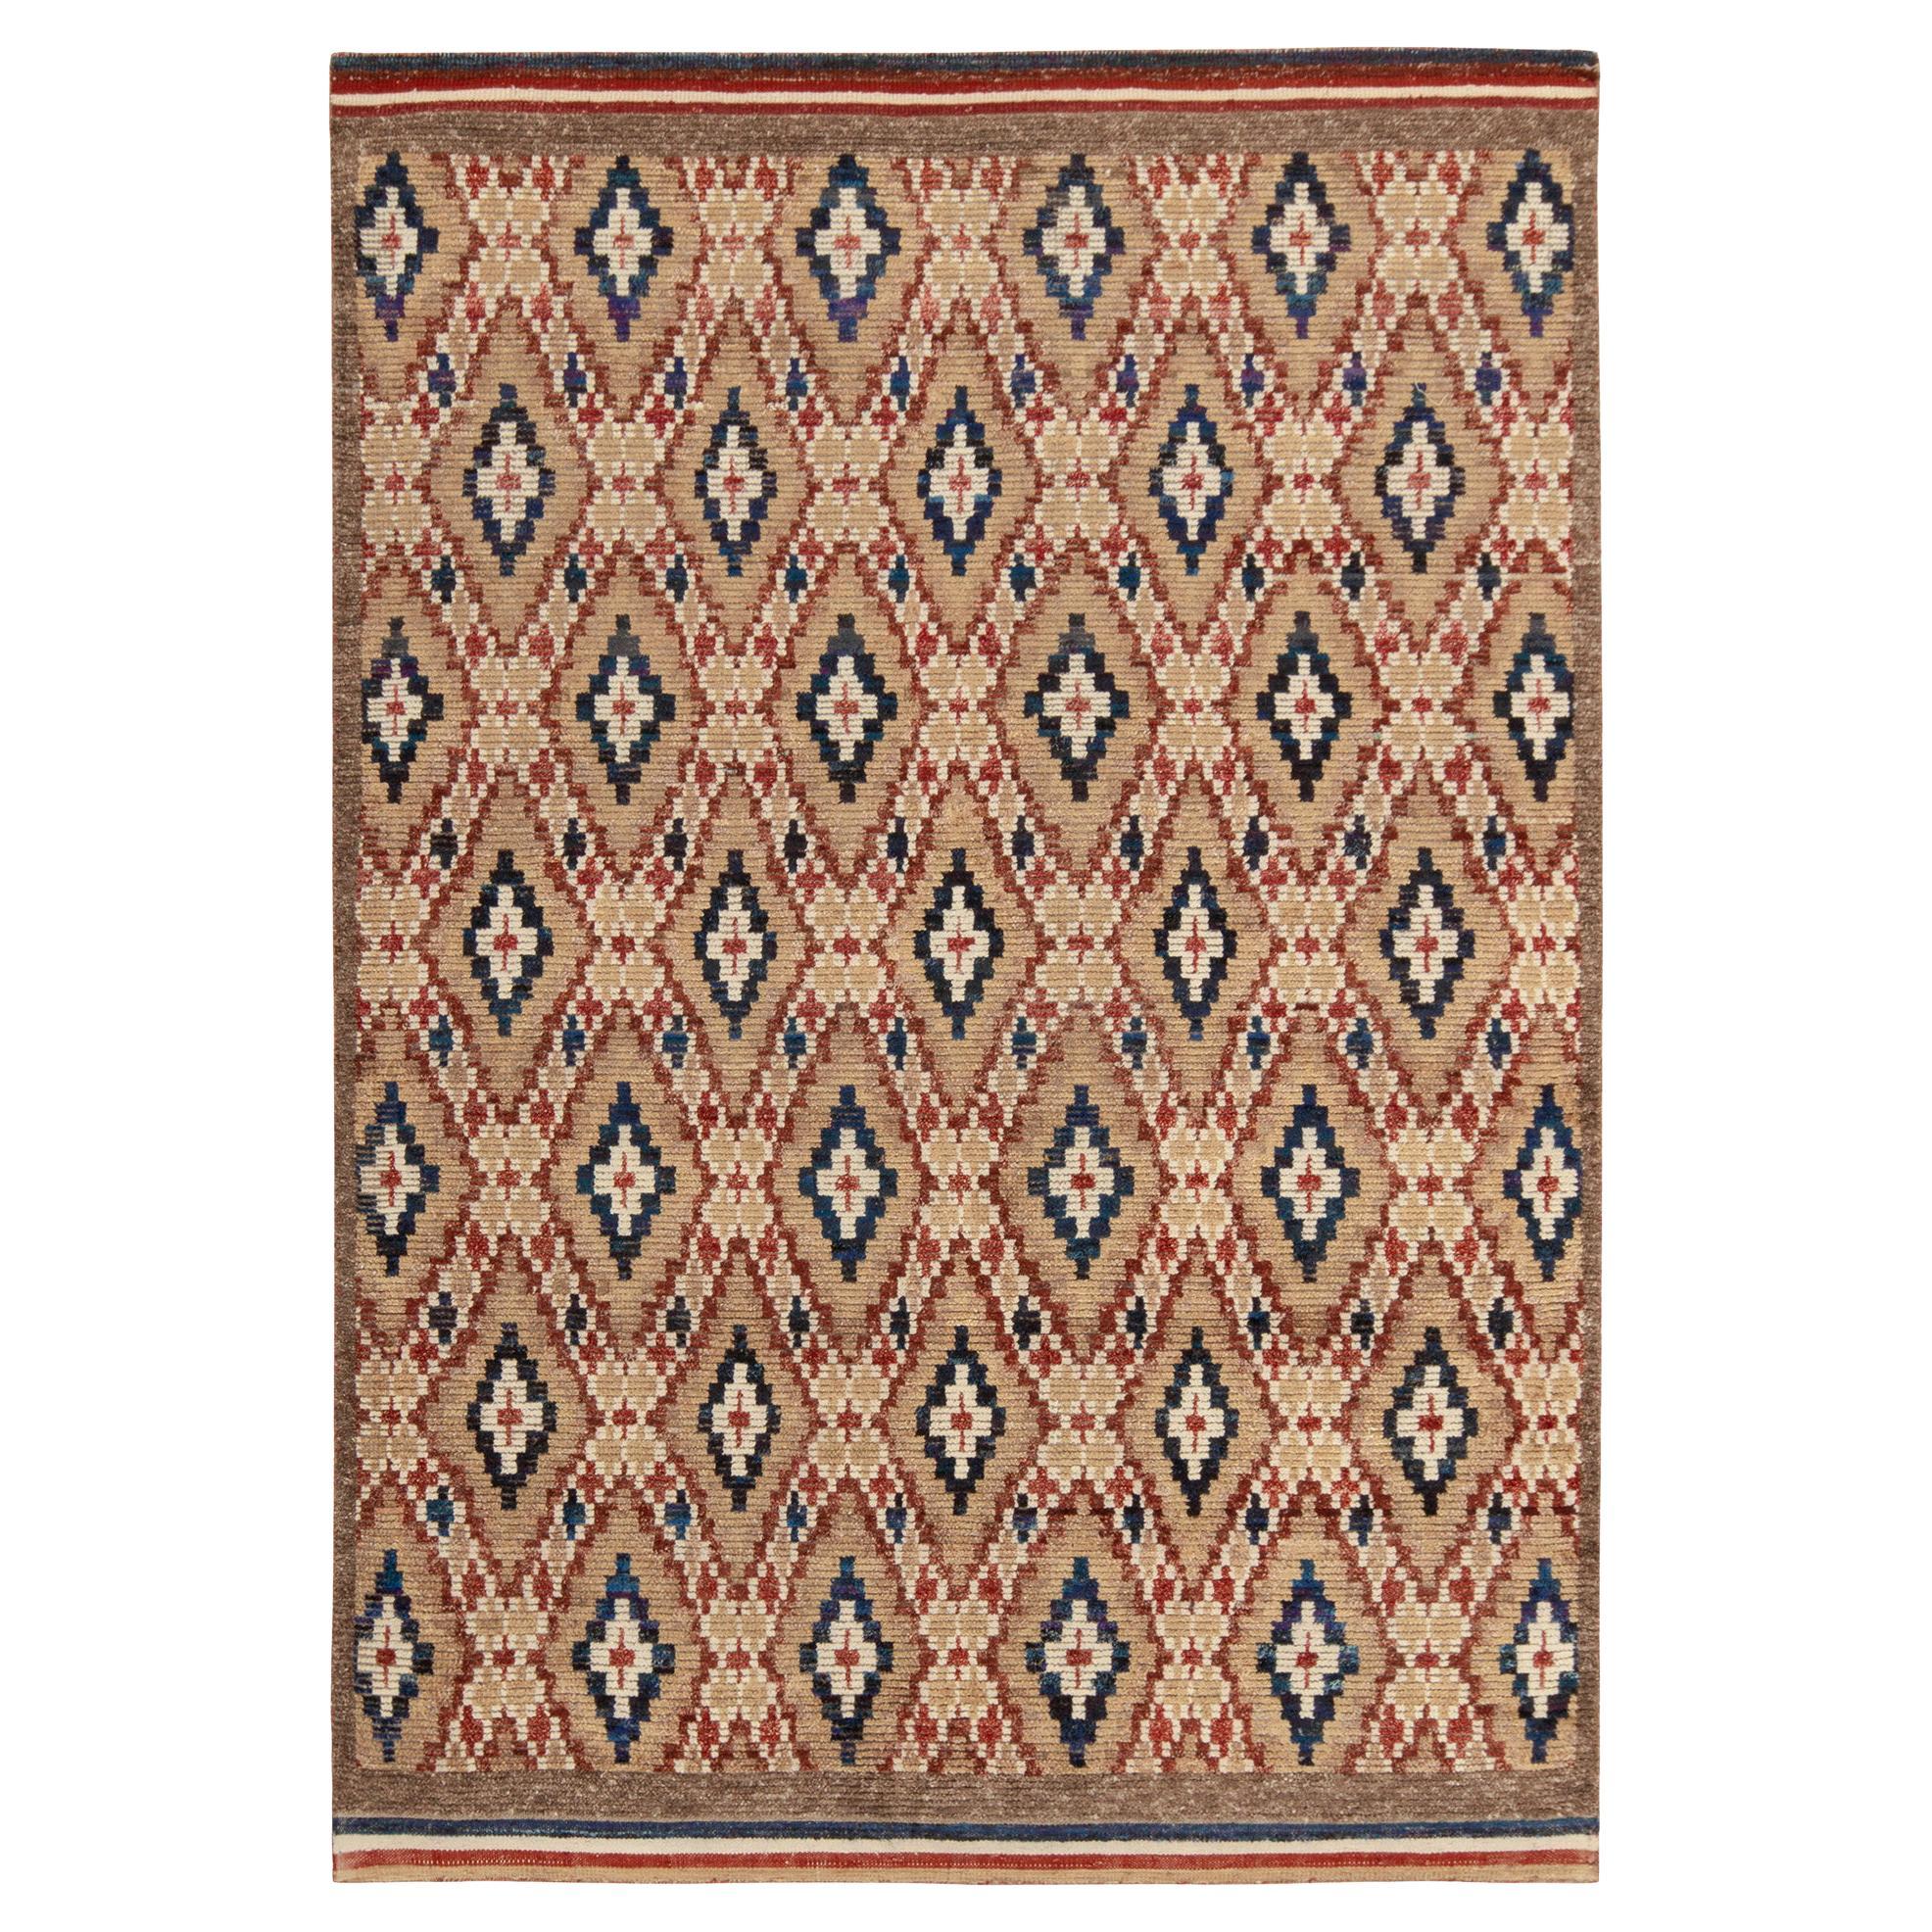 Tapis et tapis de style marocain de Kilim à motifs de diamants beige-marron, rouge et bleu